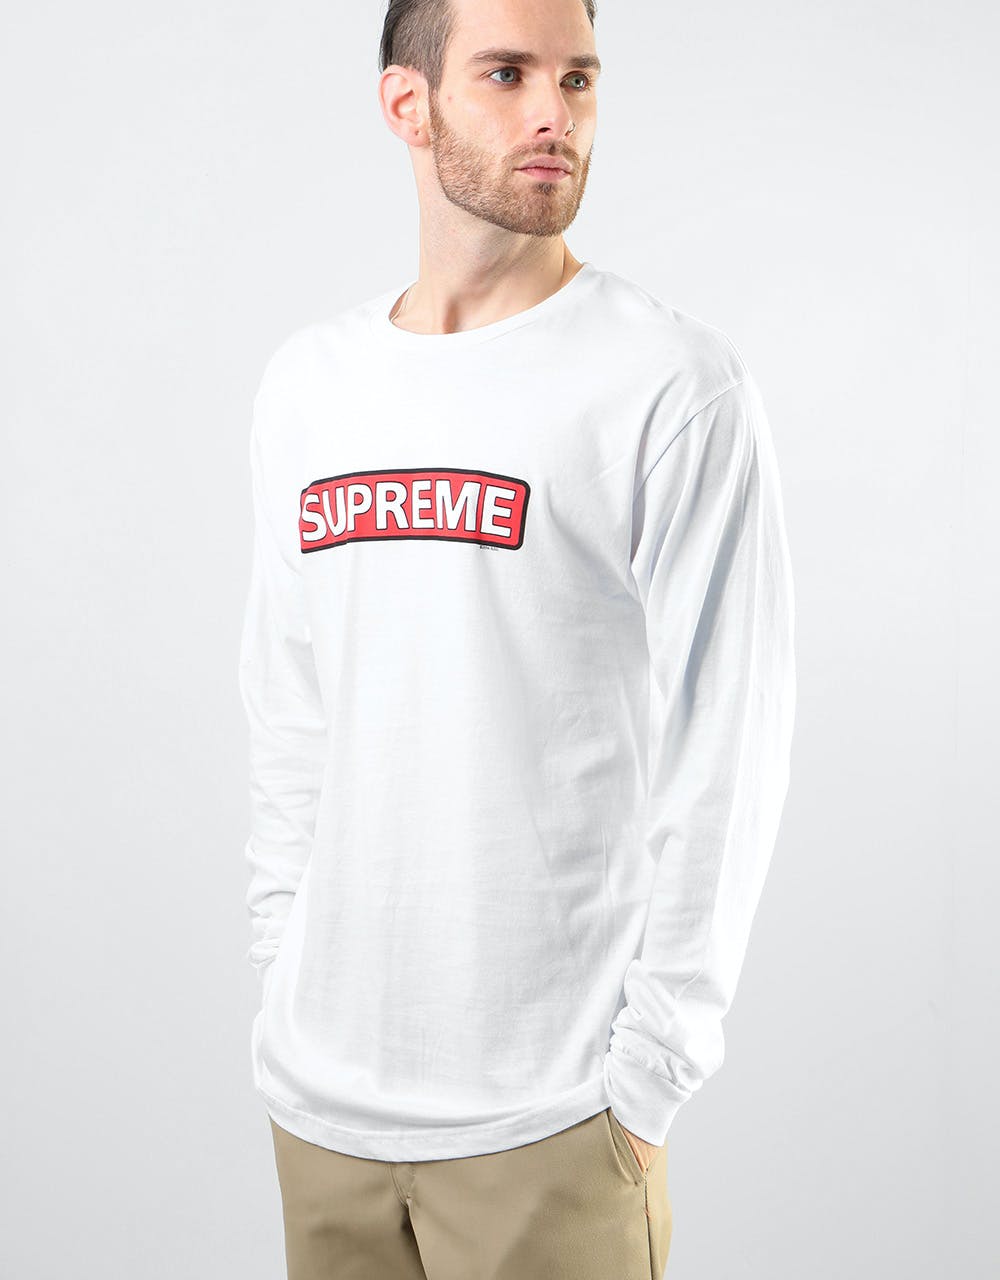 Powell Peralta Supreme L/S T-Shirt - White